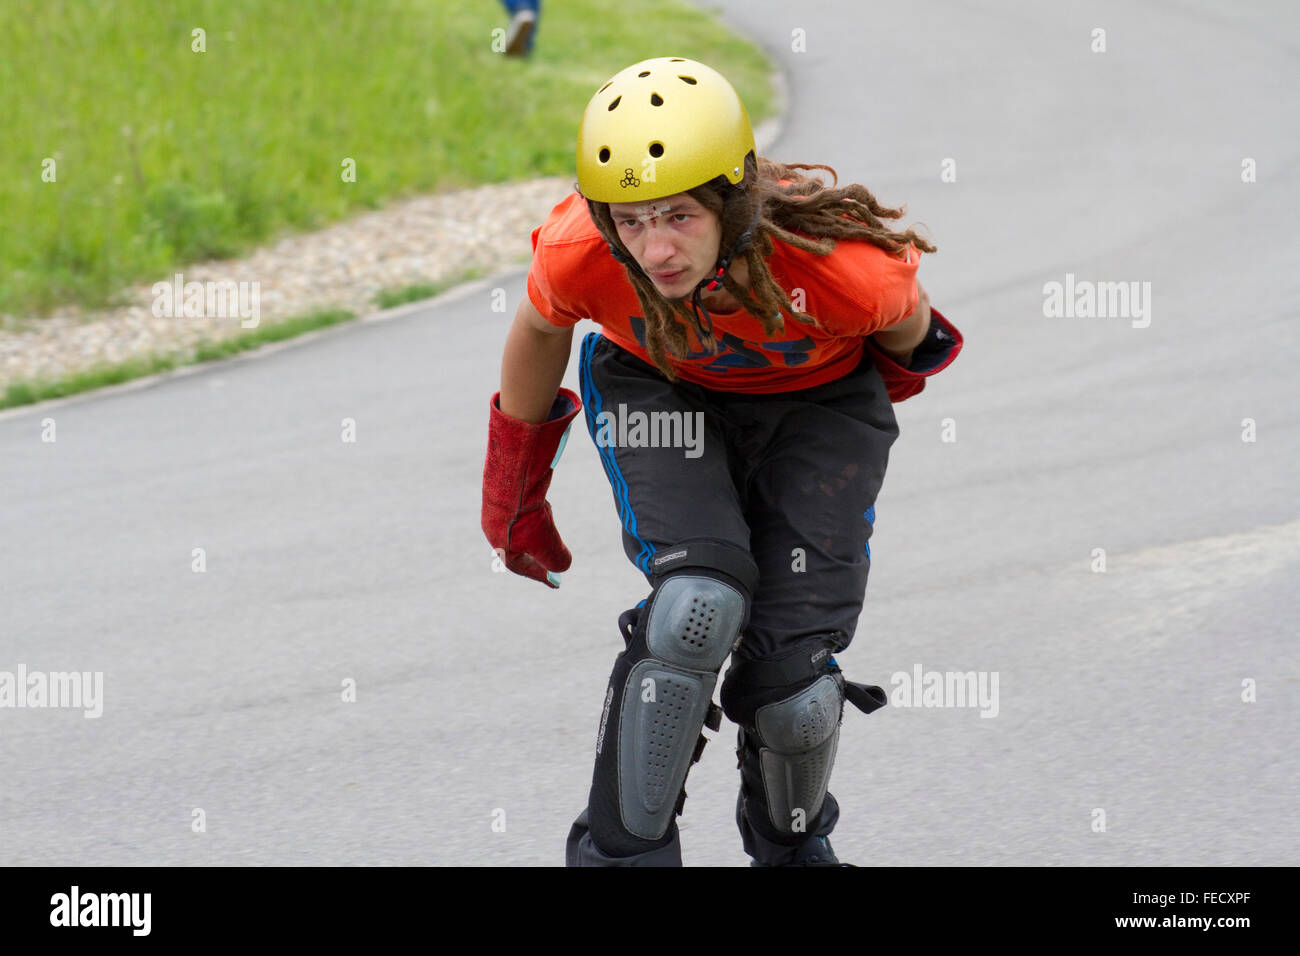 Skateur professionnel participe à une course de descente Banque D'Images